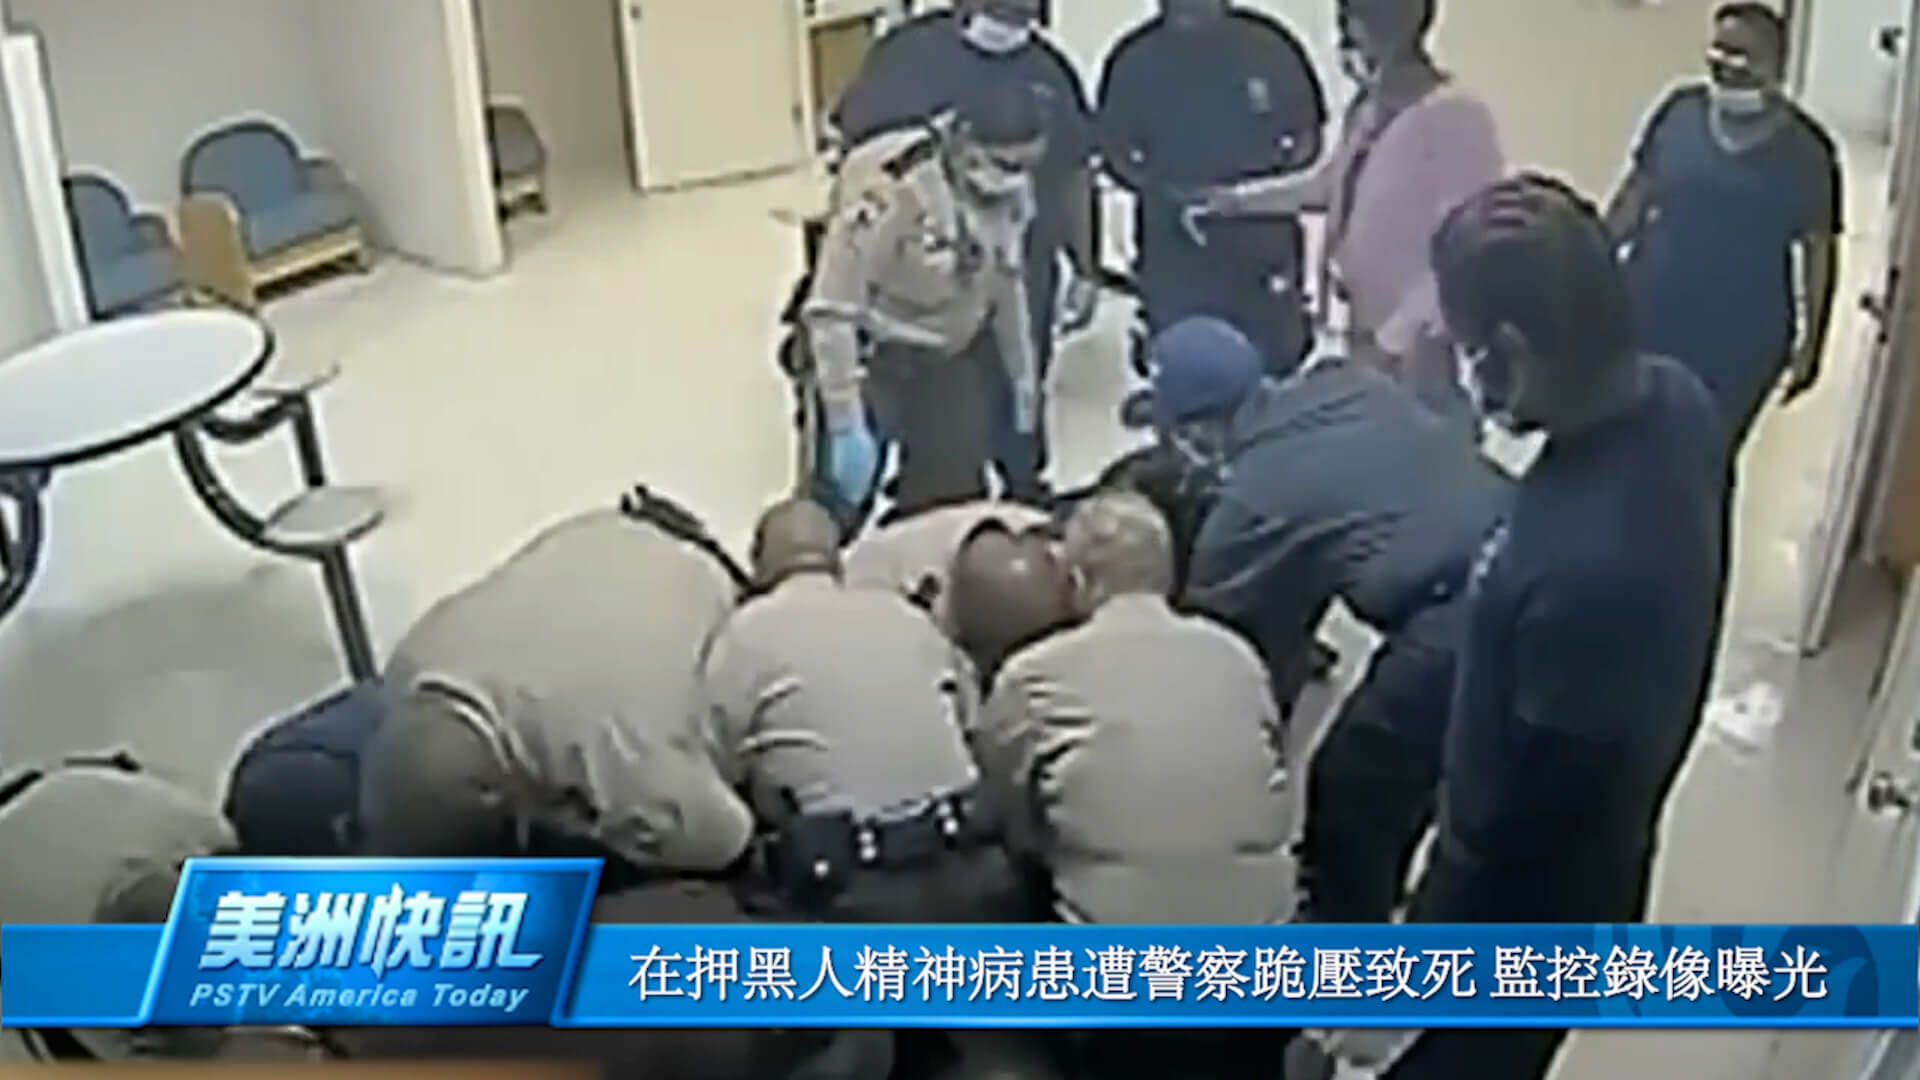 在押黑人精神病患遭警察跪压致死 监控录像曝光